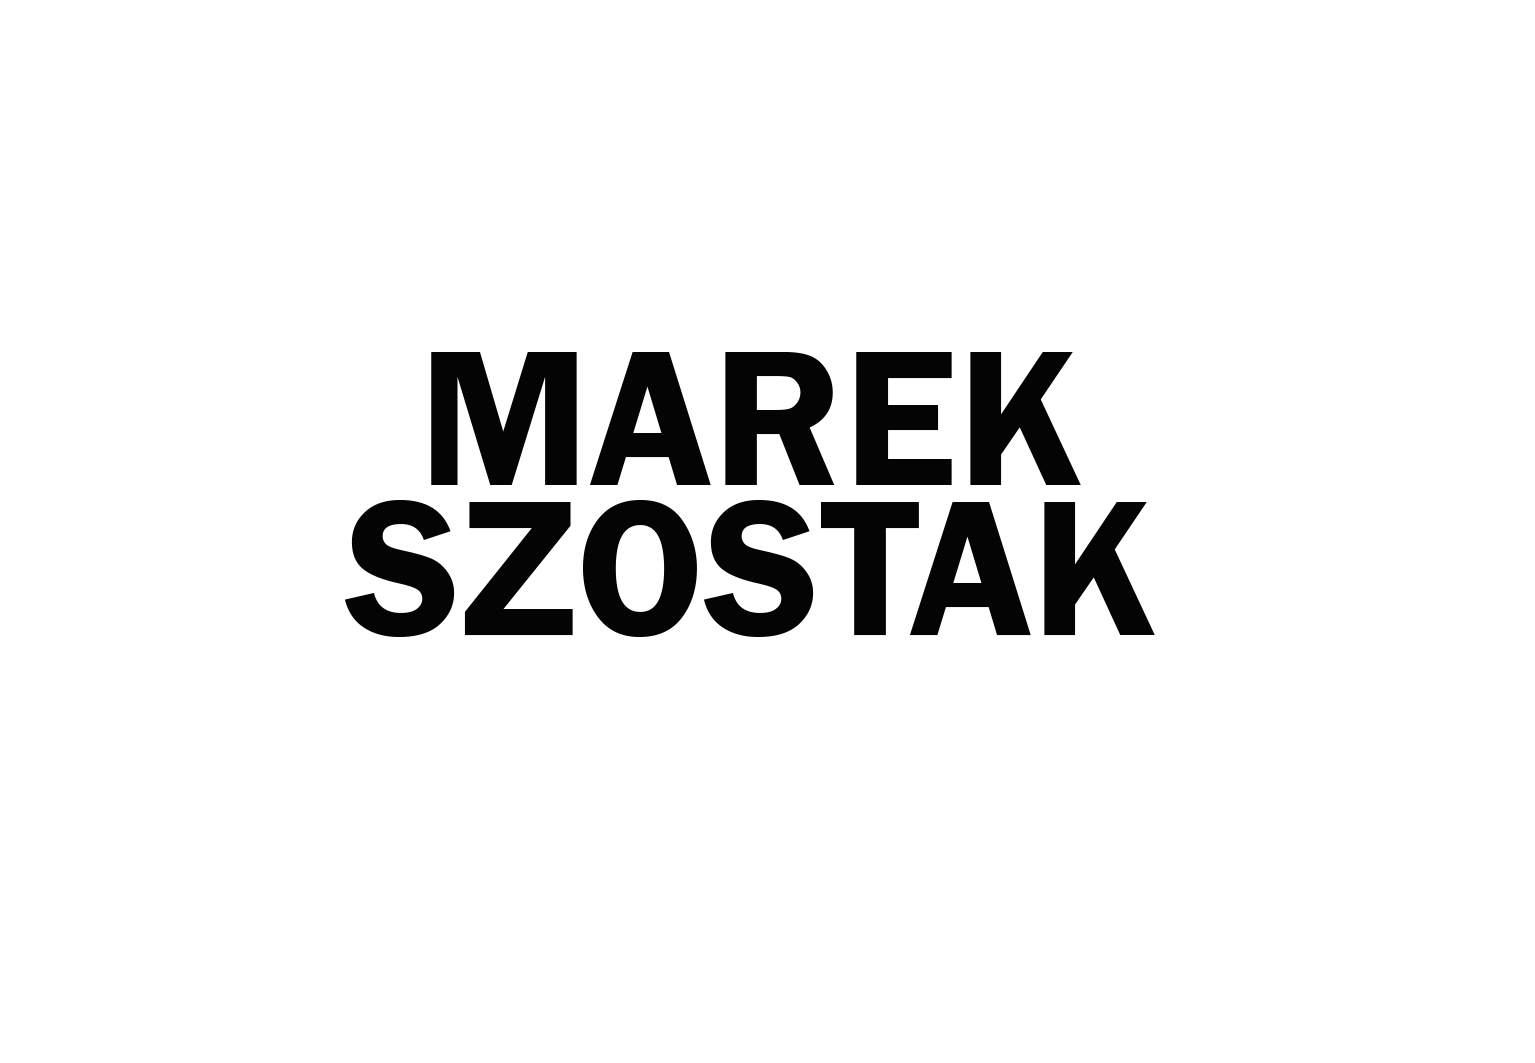 Marek Szostak